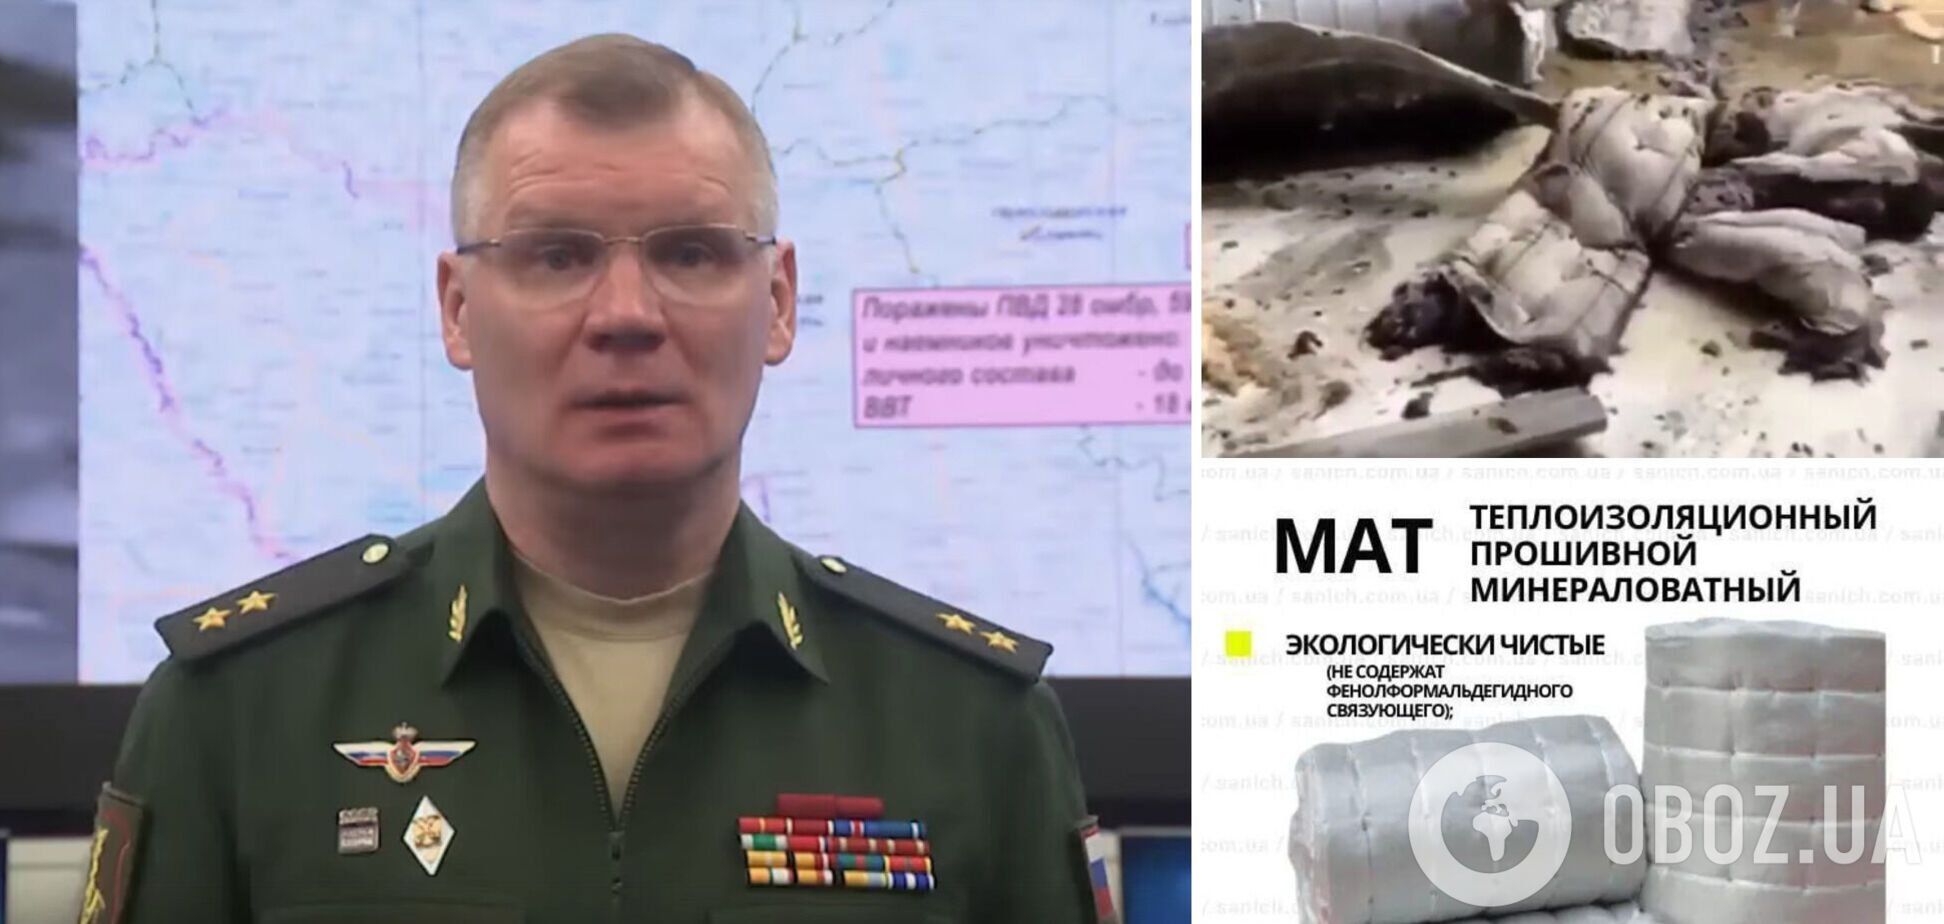 В минобороны РФ рассказали об уничтожении HIMARS в Дружковке и выдали материал кровли за матрасы для 'боевиков'. Фото и видео